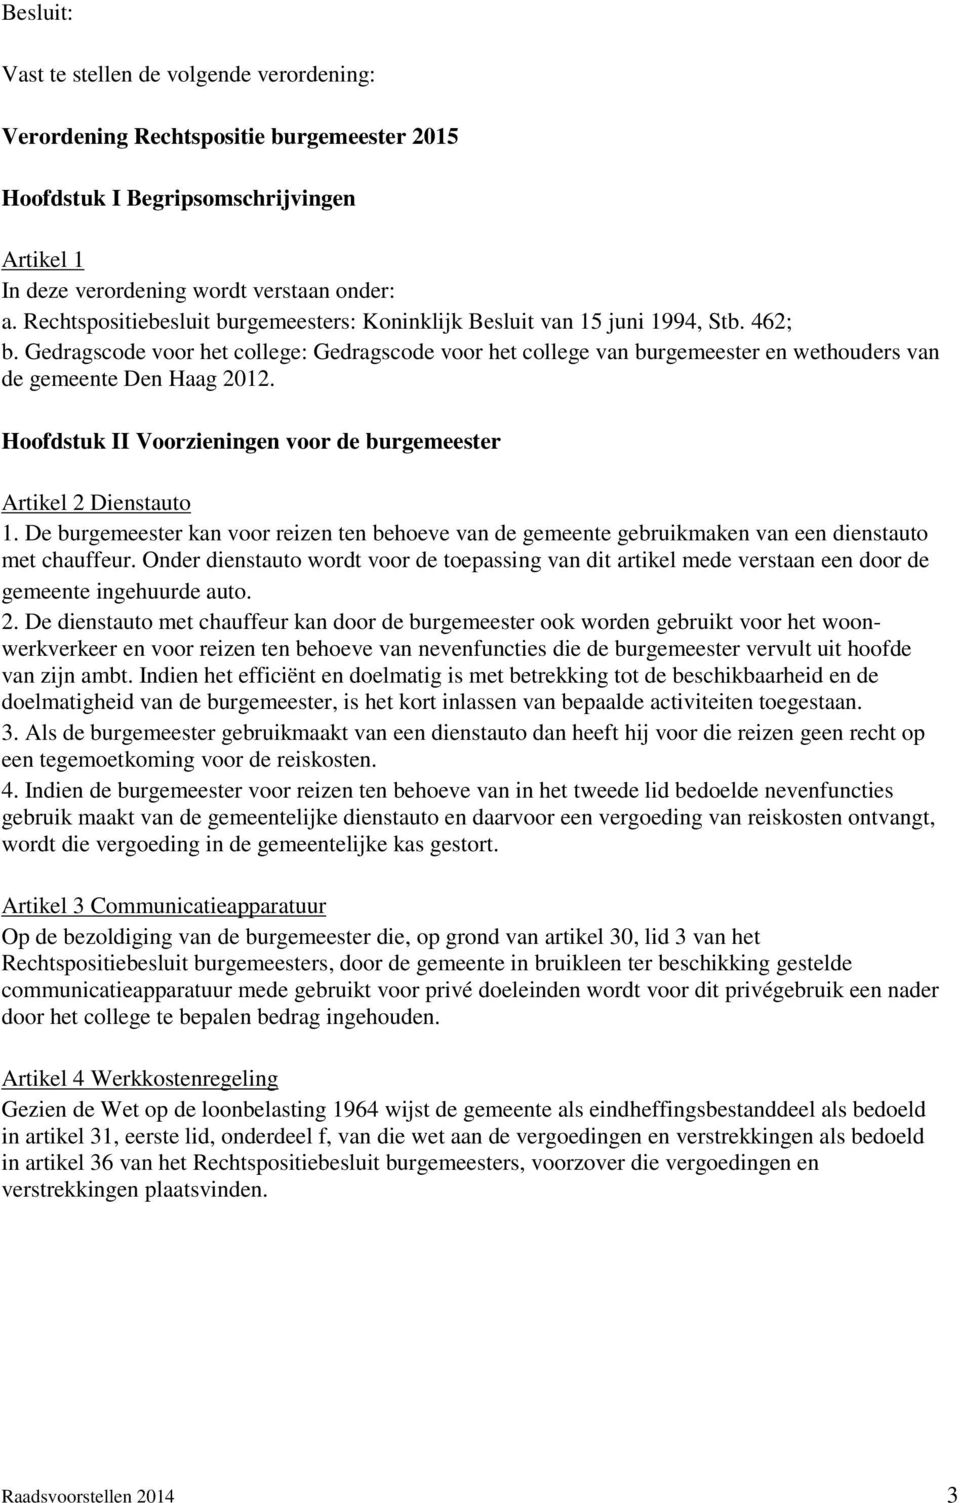 Gedragscode voor het college: Gedragscode voor het college van burgemeester en wethouders van de gemeente Den Haag 2012. Hoofdstuk II Voorzieningen voor de burgemeester Artikel 2 Dienstauto 1.